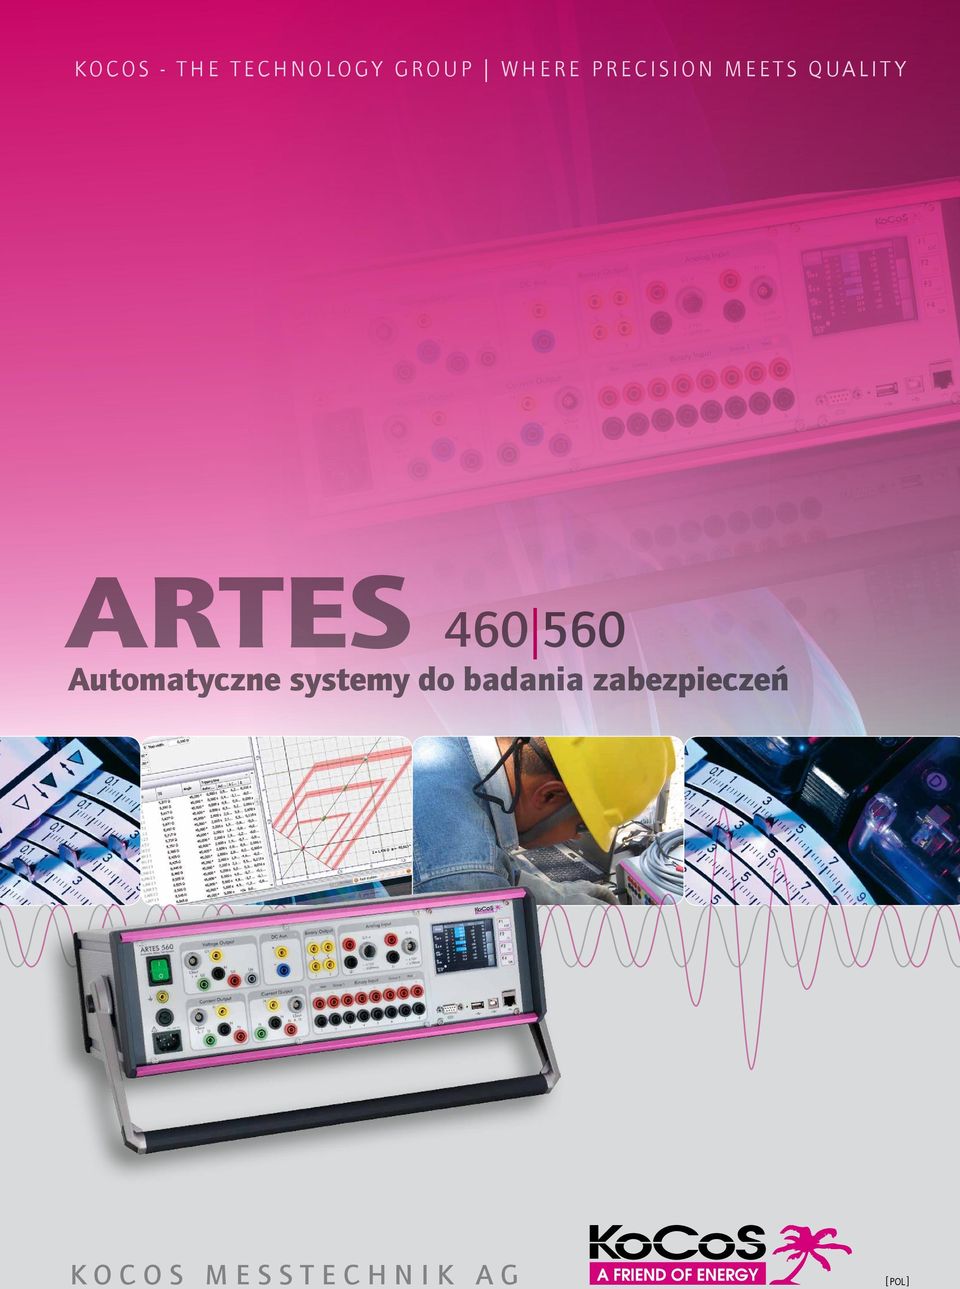 ARTES 460 560 Automatyczne systemy do badania